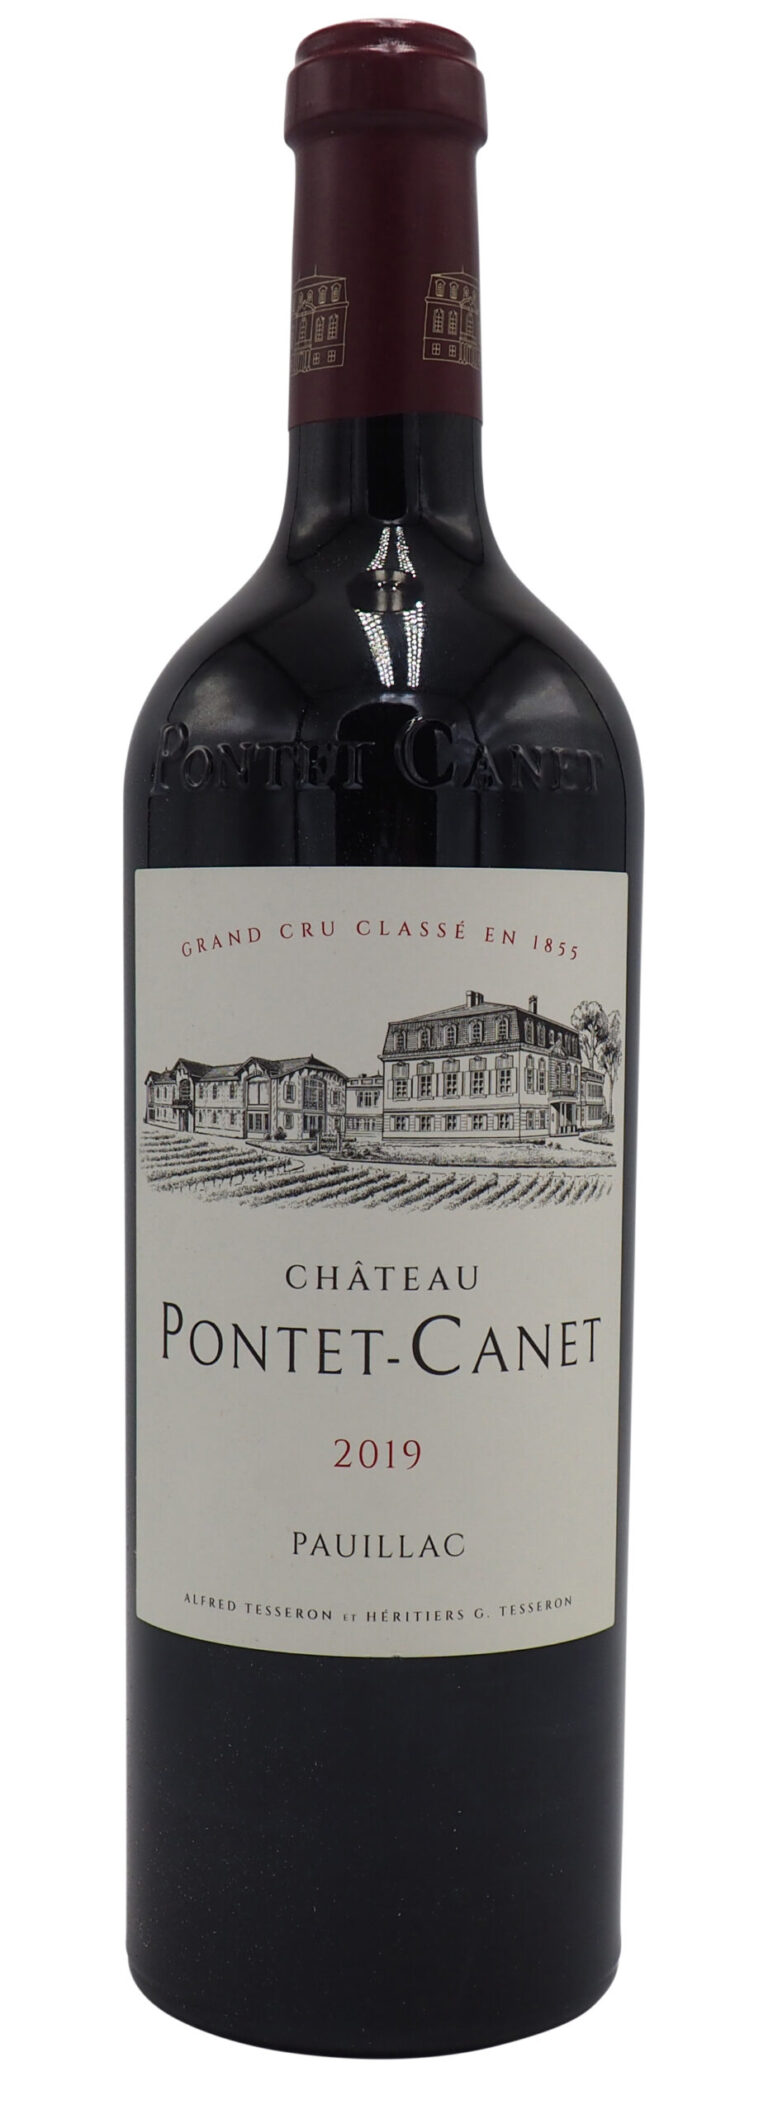 Château Pontet-Canet Pauillac 2019